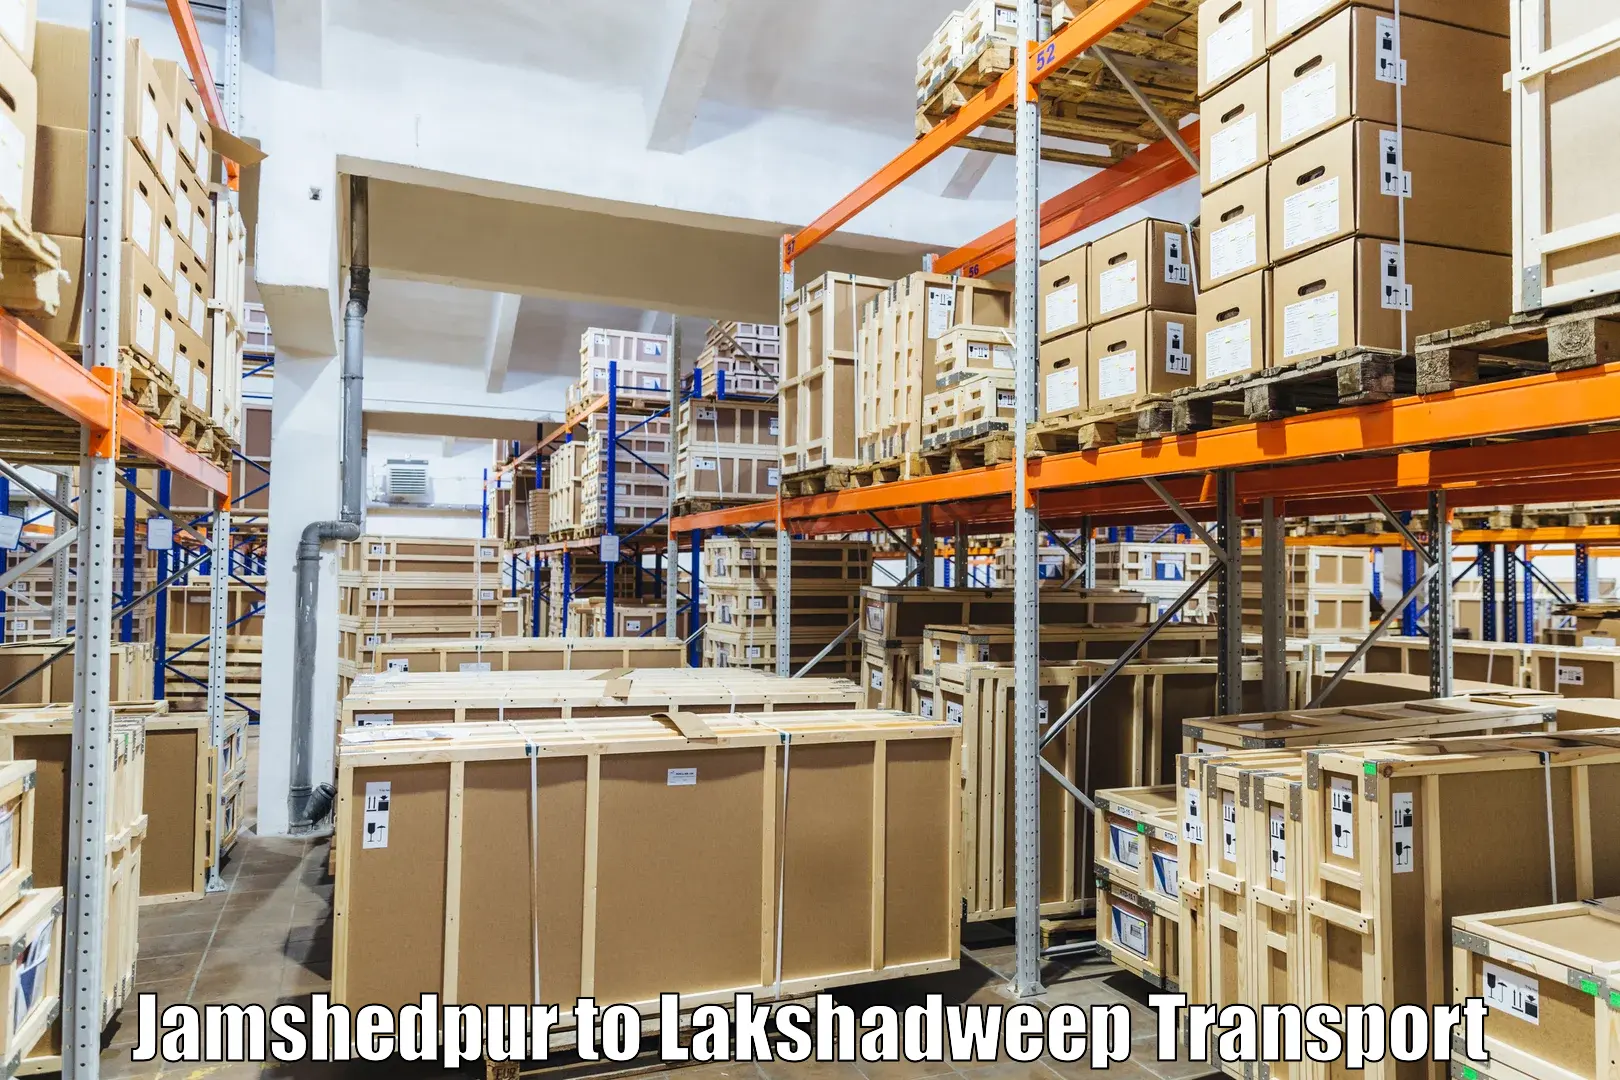 Vehicle parcel service Jamshedpur to Lakshadweep